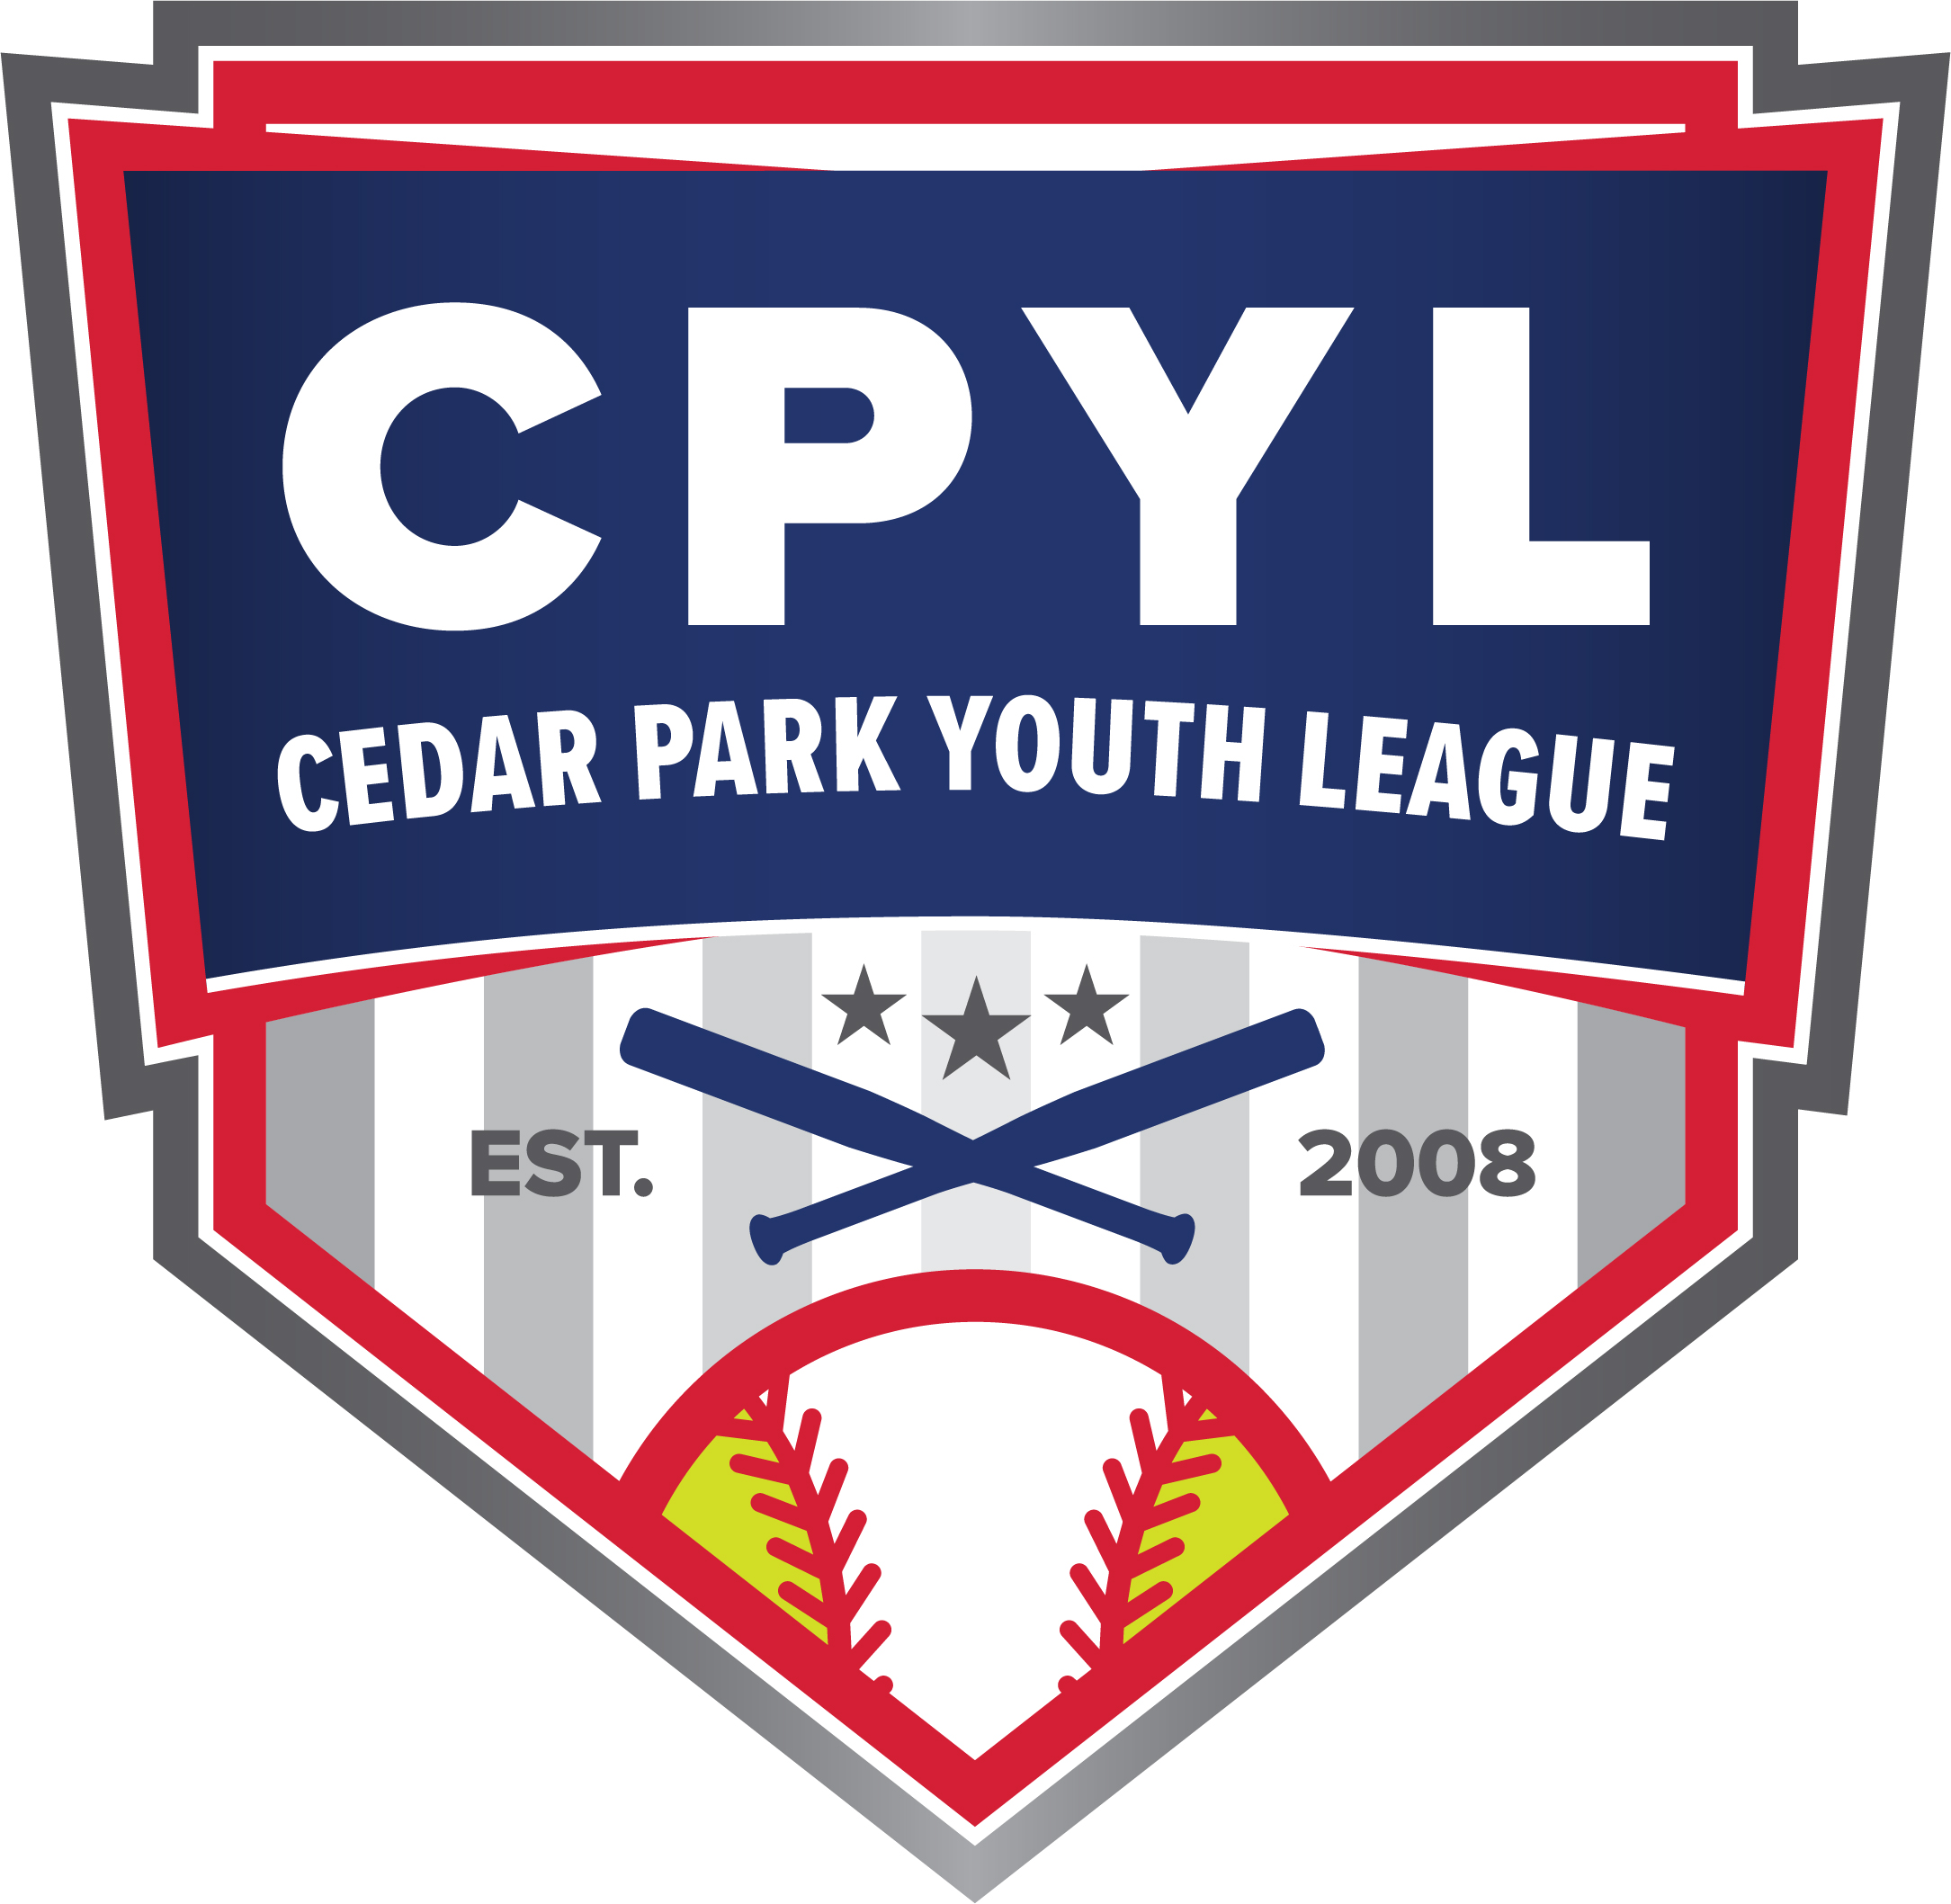 Cedar Park Youth League